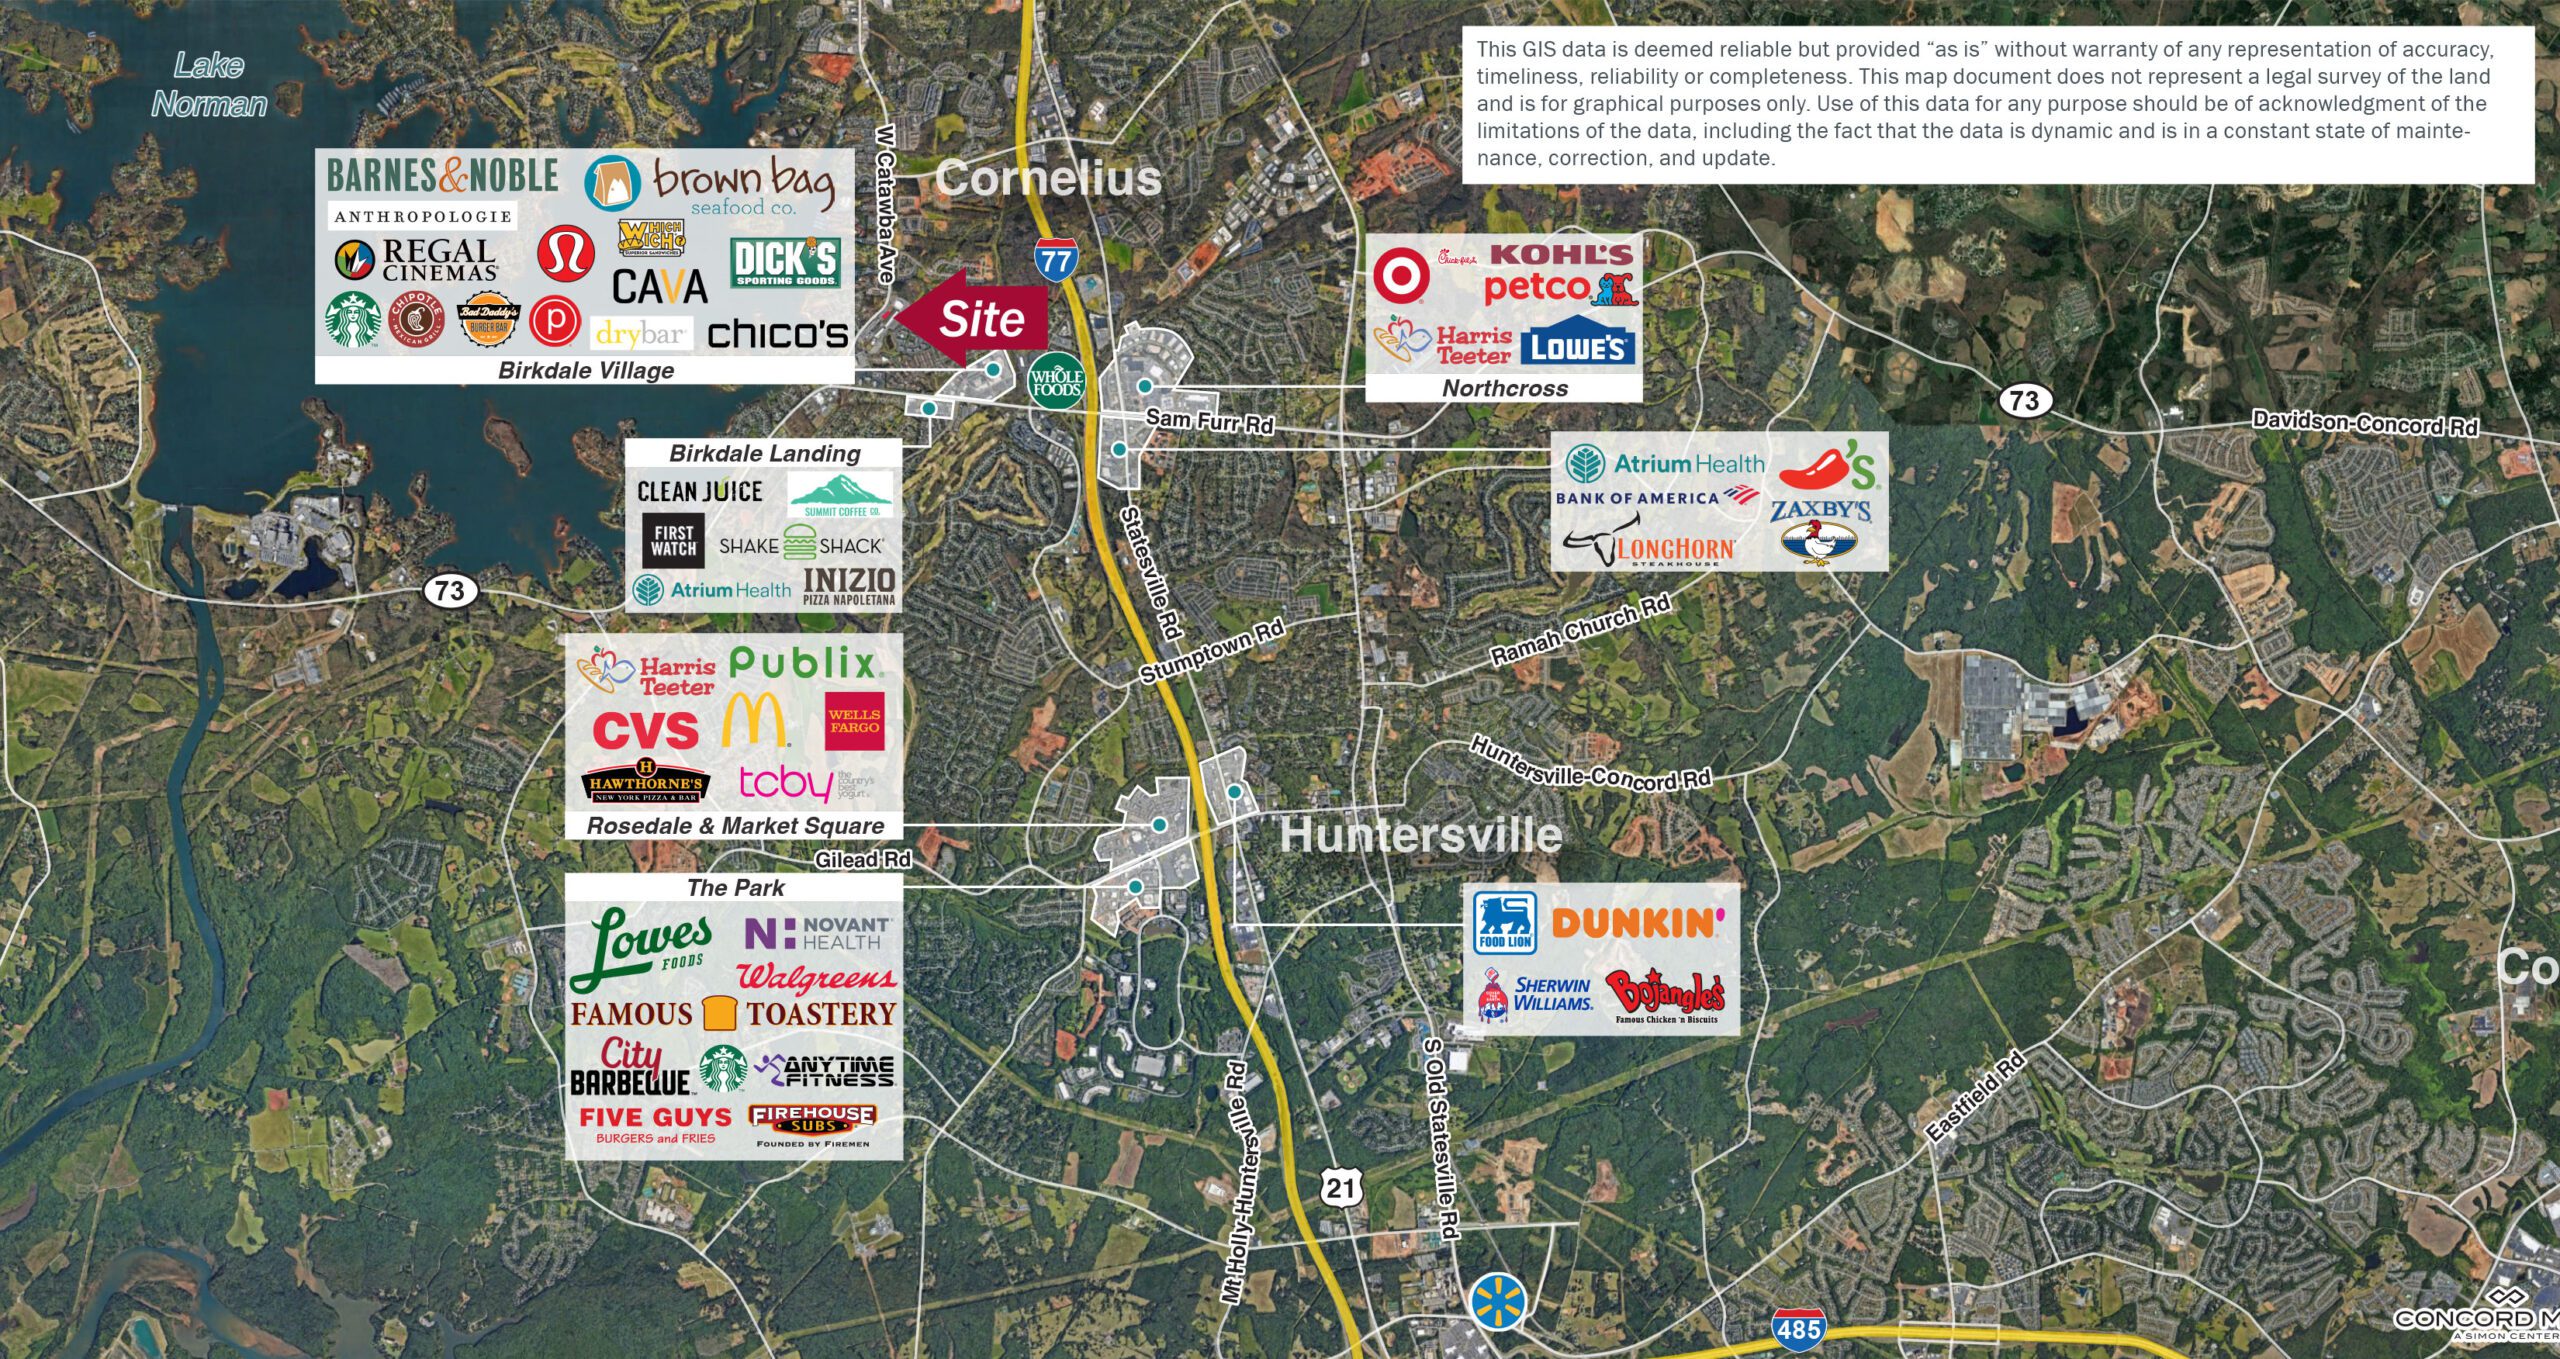 Aerial Site plan of Cornelius, NC